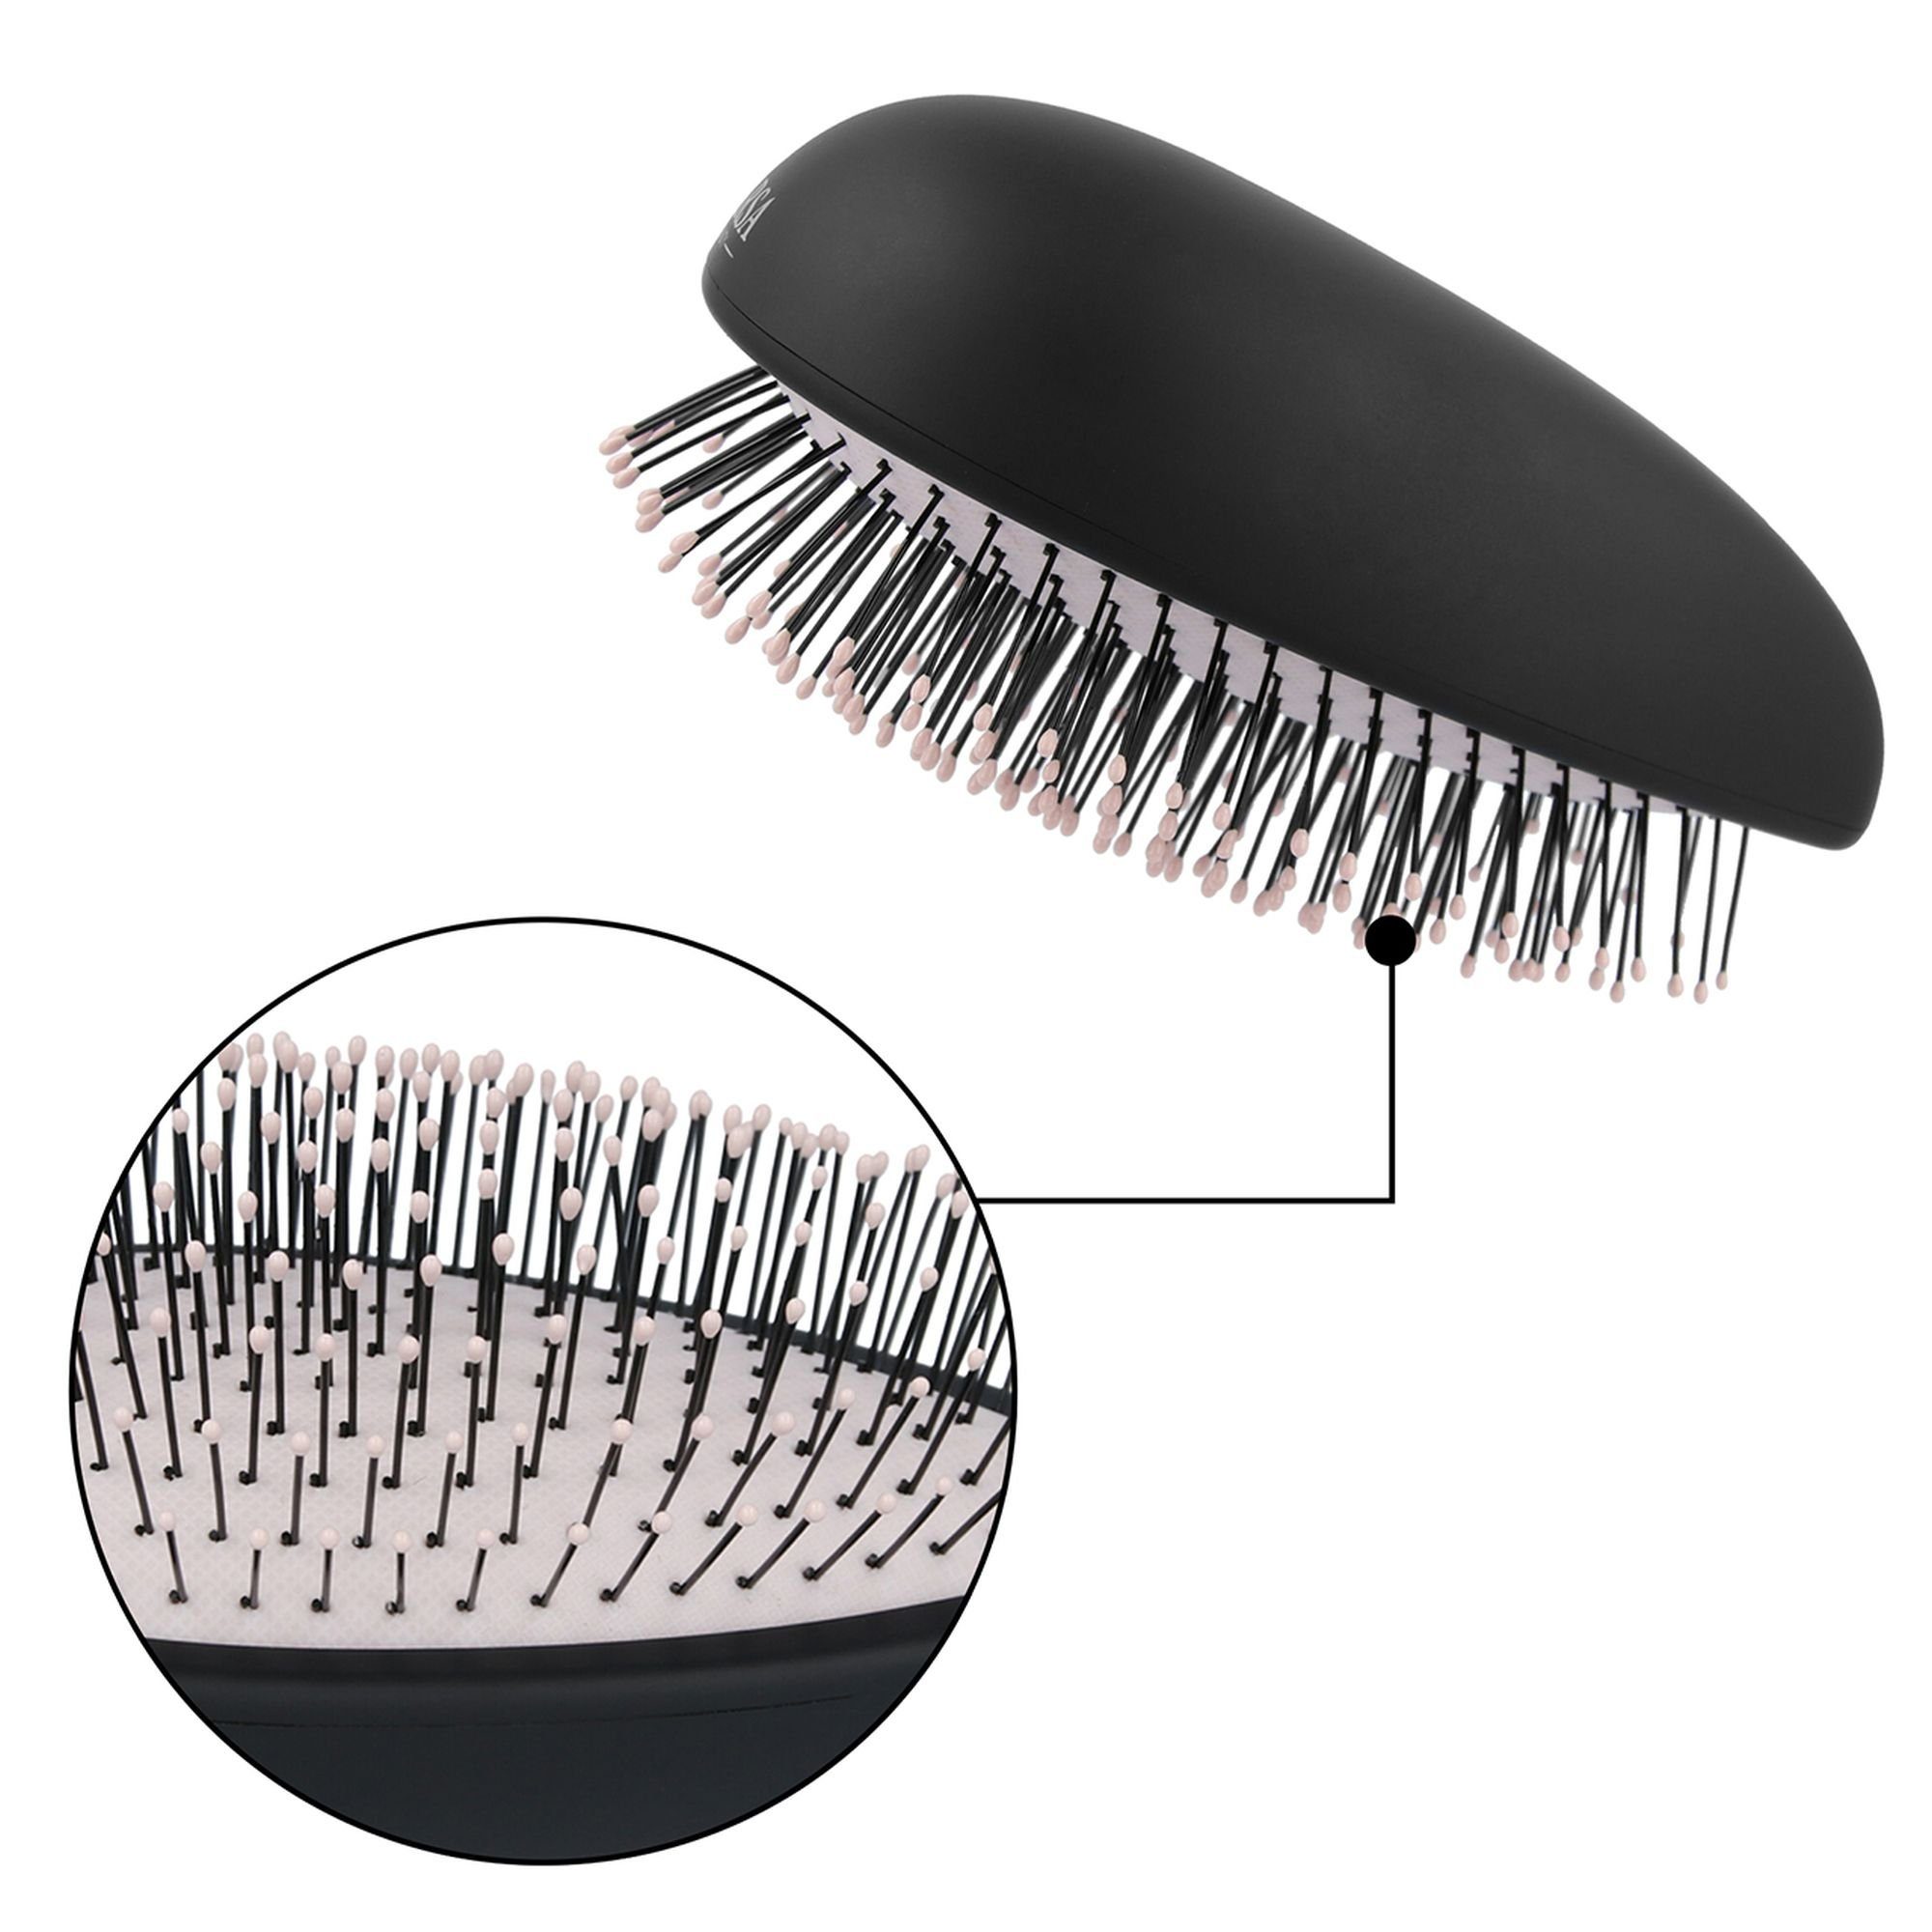 PARSA Beauty Haarbürste Entwirrbürste Haar Styler Entwirrer in schwarz Compact